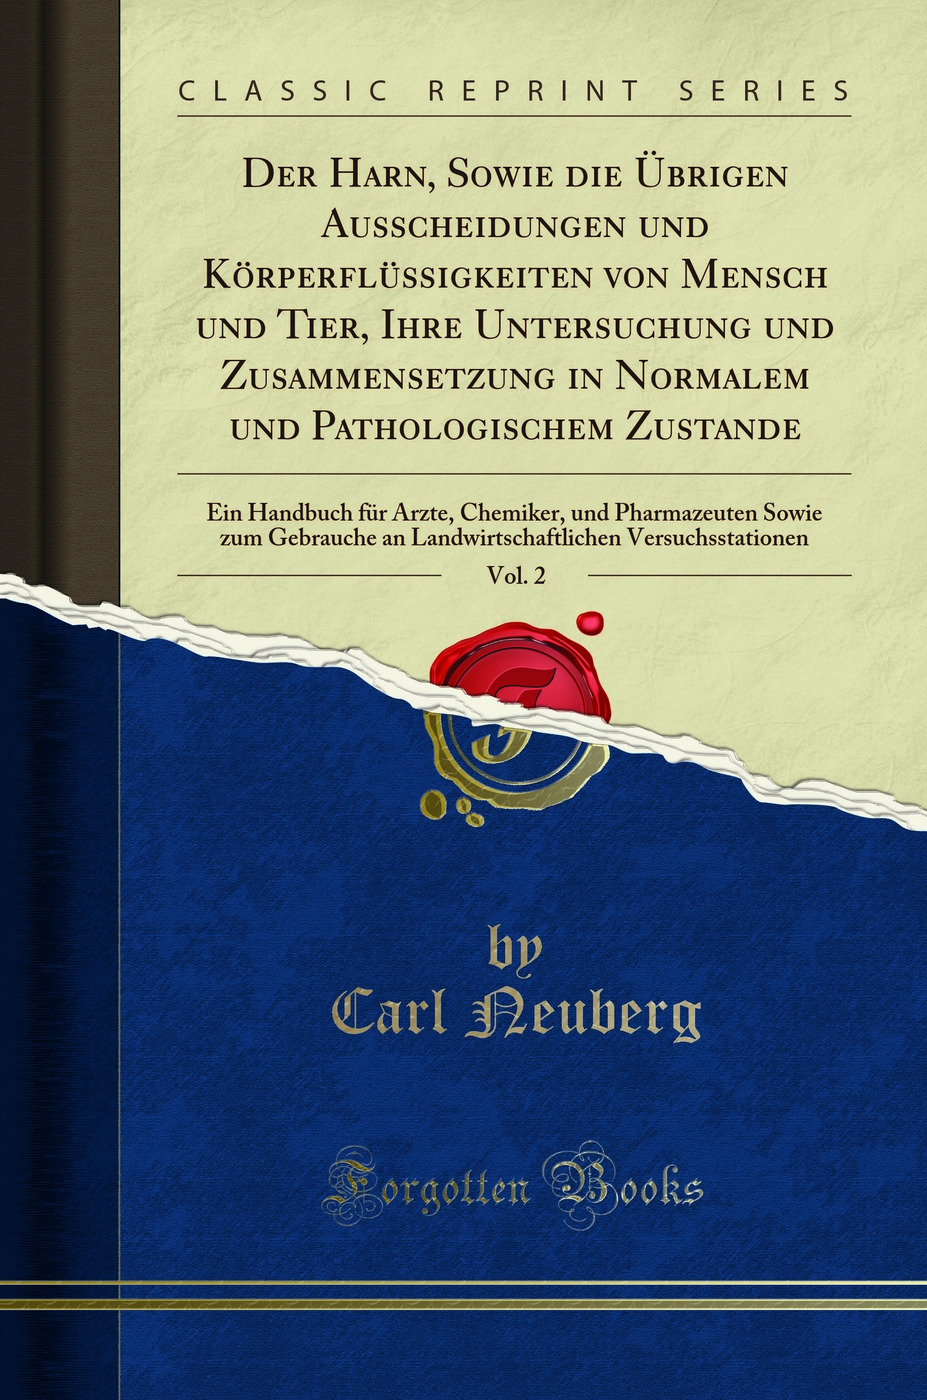 Der Harn, Sowie die Ãœbrigen Ausscheidungen und KÃ rperflÃ¼ssigkeiten von Mensch - Carl Neuberg